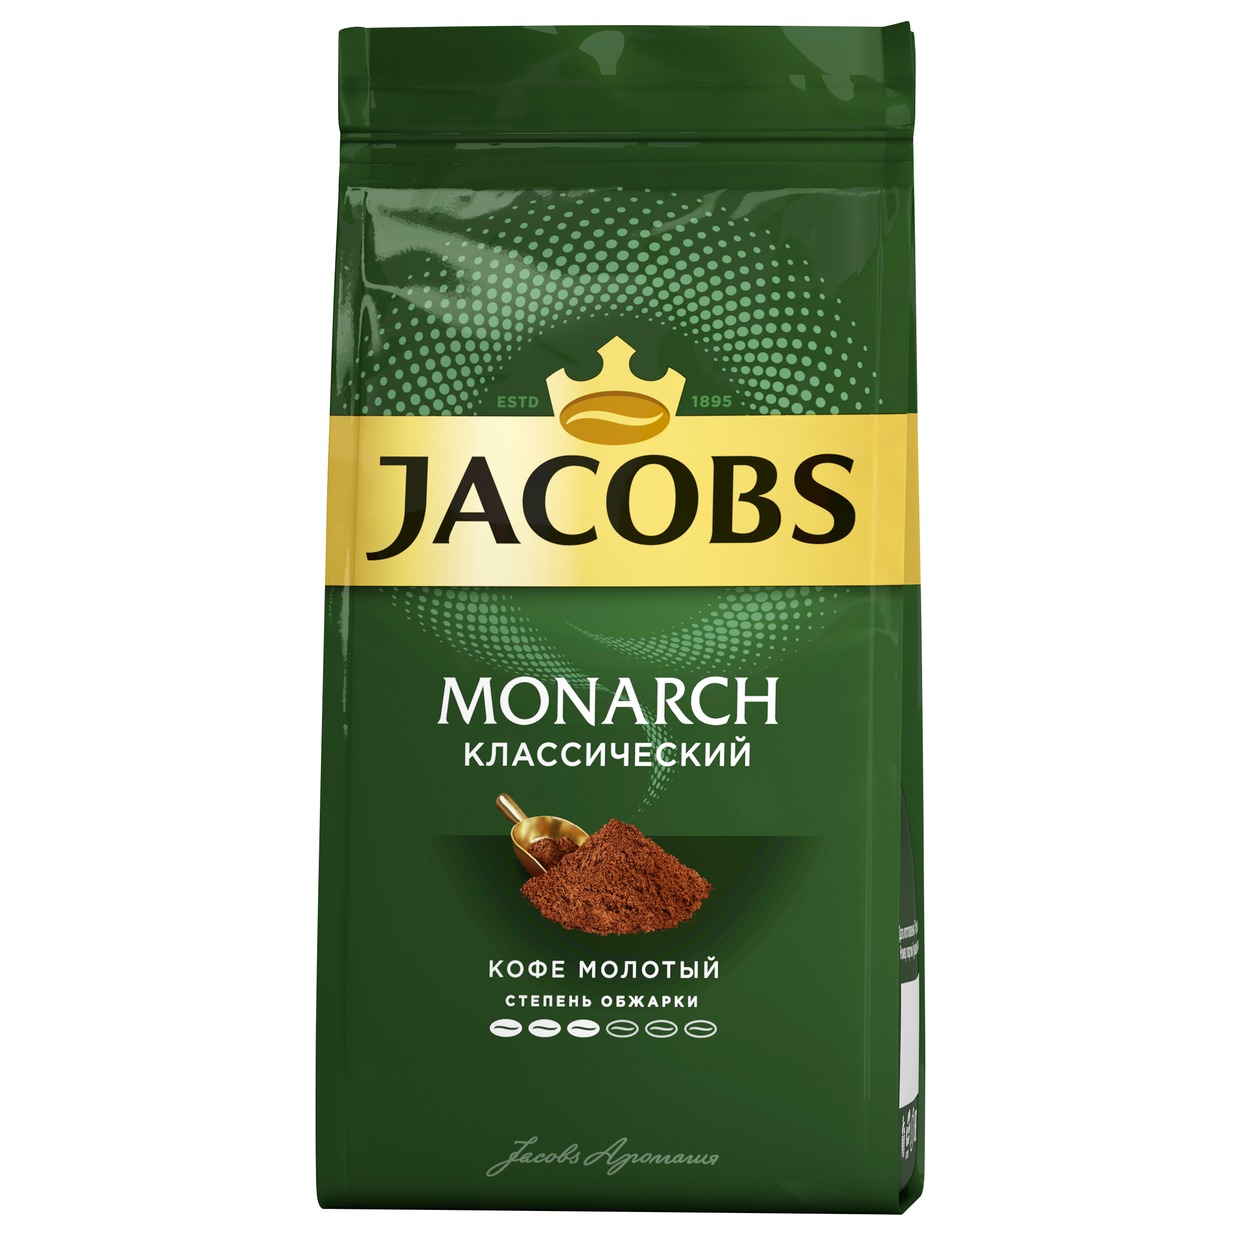 Кофе Jacobs Monarch, Классический, молотый, 230 г по акции в Пятерочке